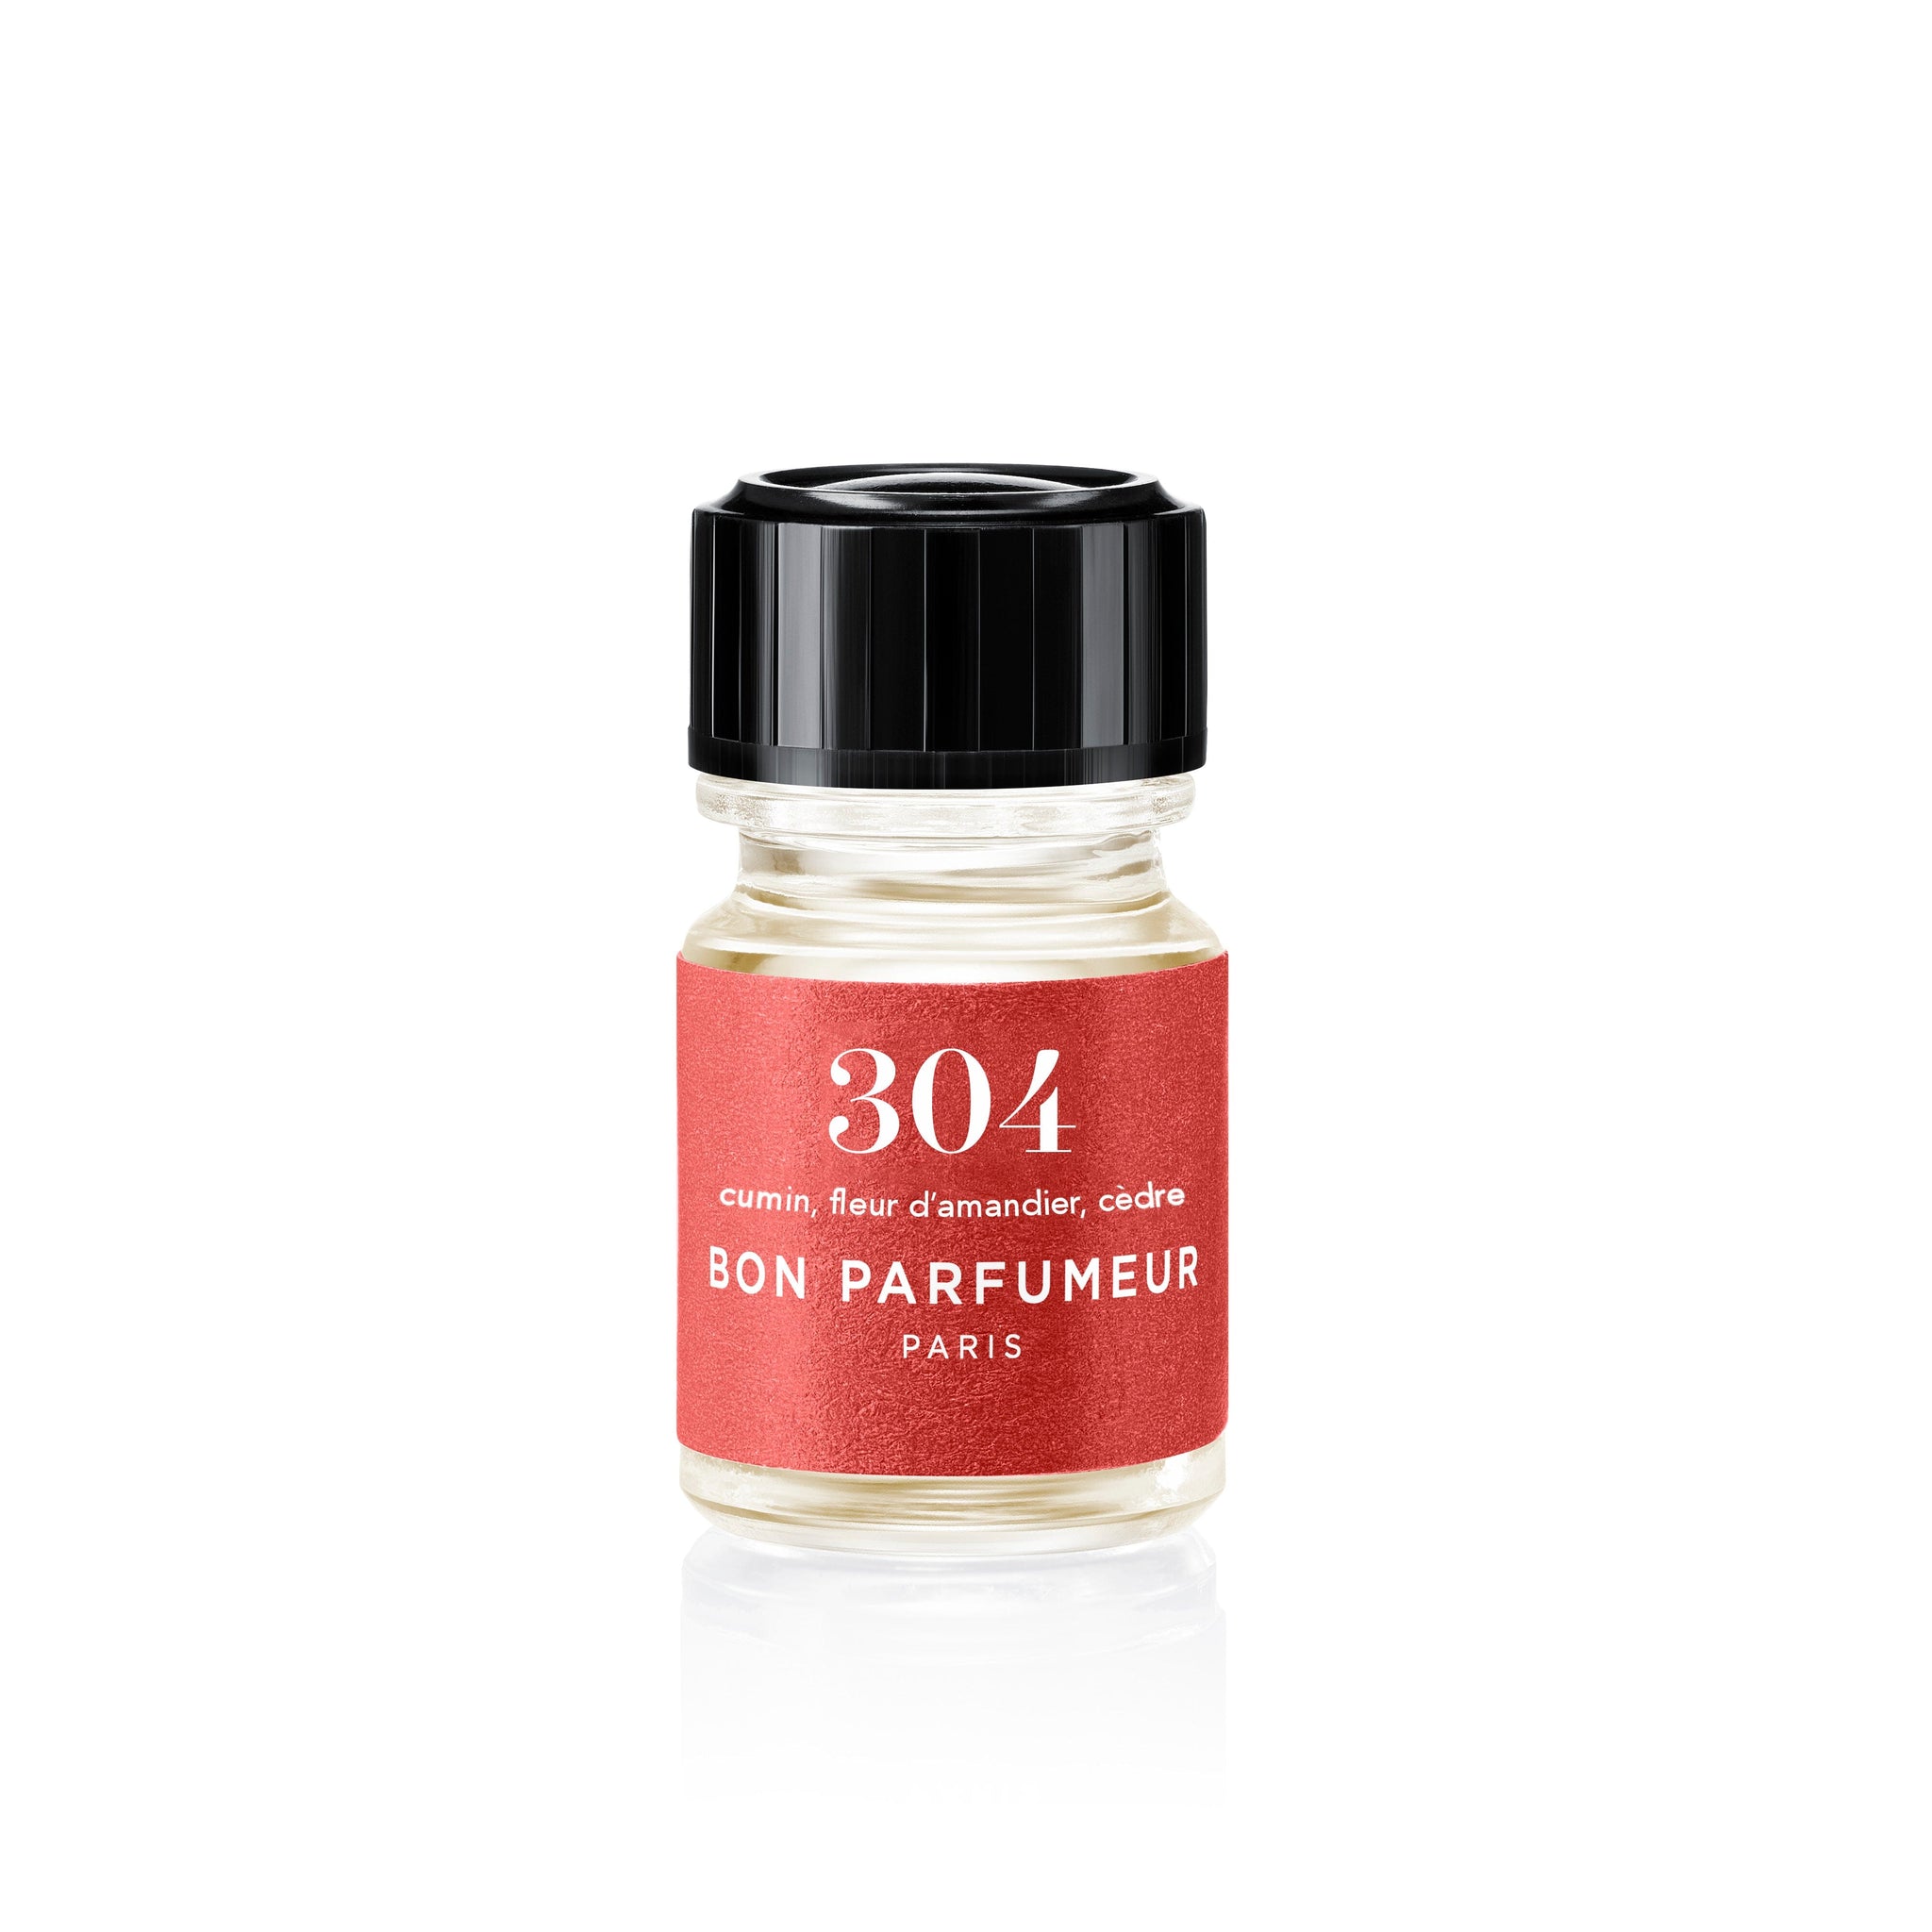 Mini-Parfums 2,5ml Bon Parfumeur 304: Cumin, fleur d'amandier, cèdre 